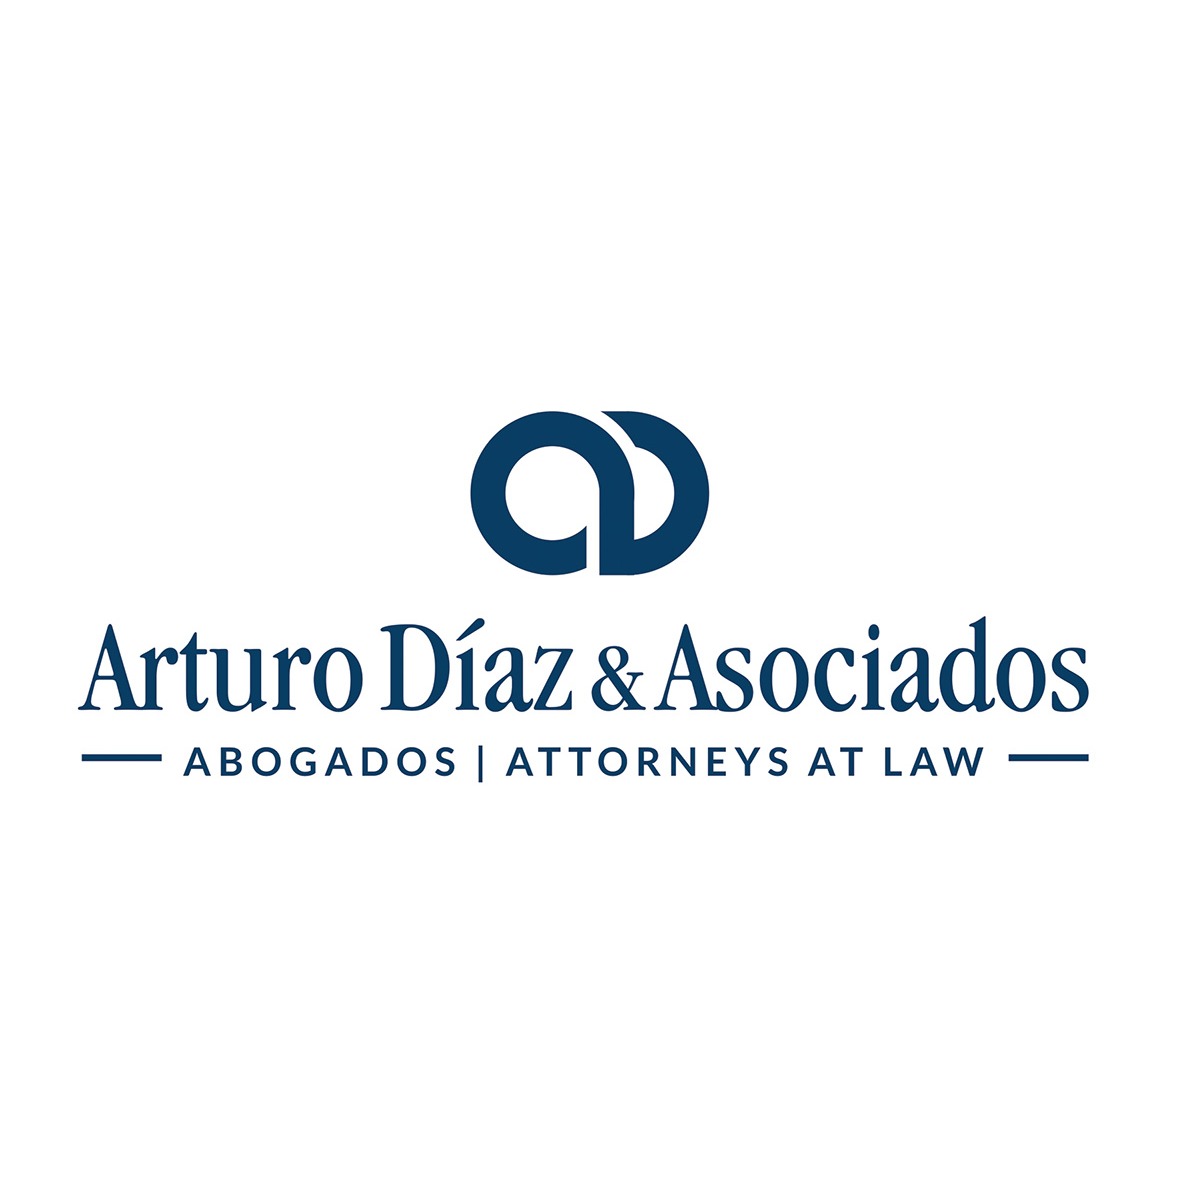 Arturo Diaz & Asociados